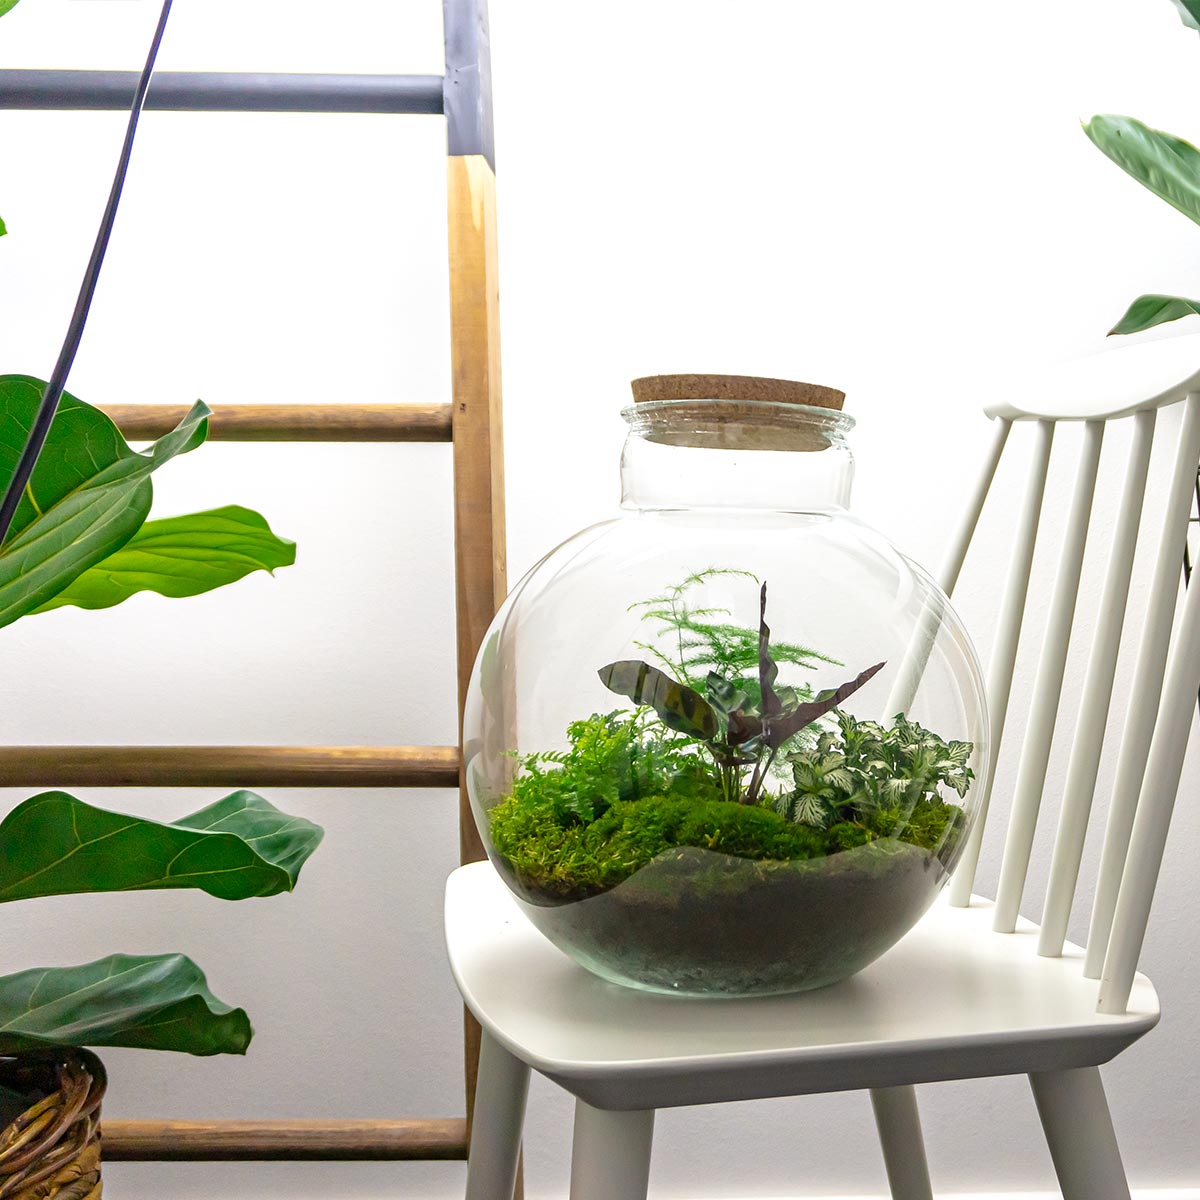 Terrarium DIY Kit - Sam XL Bonsai - Bottle Garden - ↑ 35 cm – urbanjngl